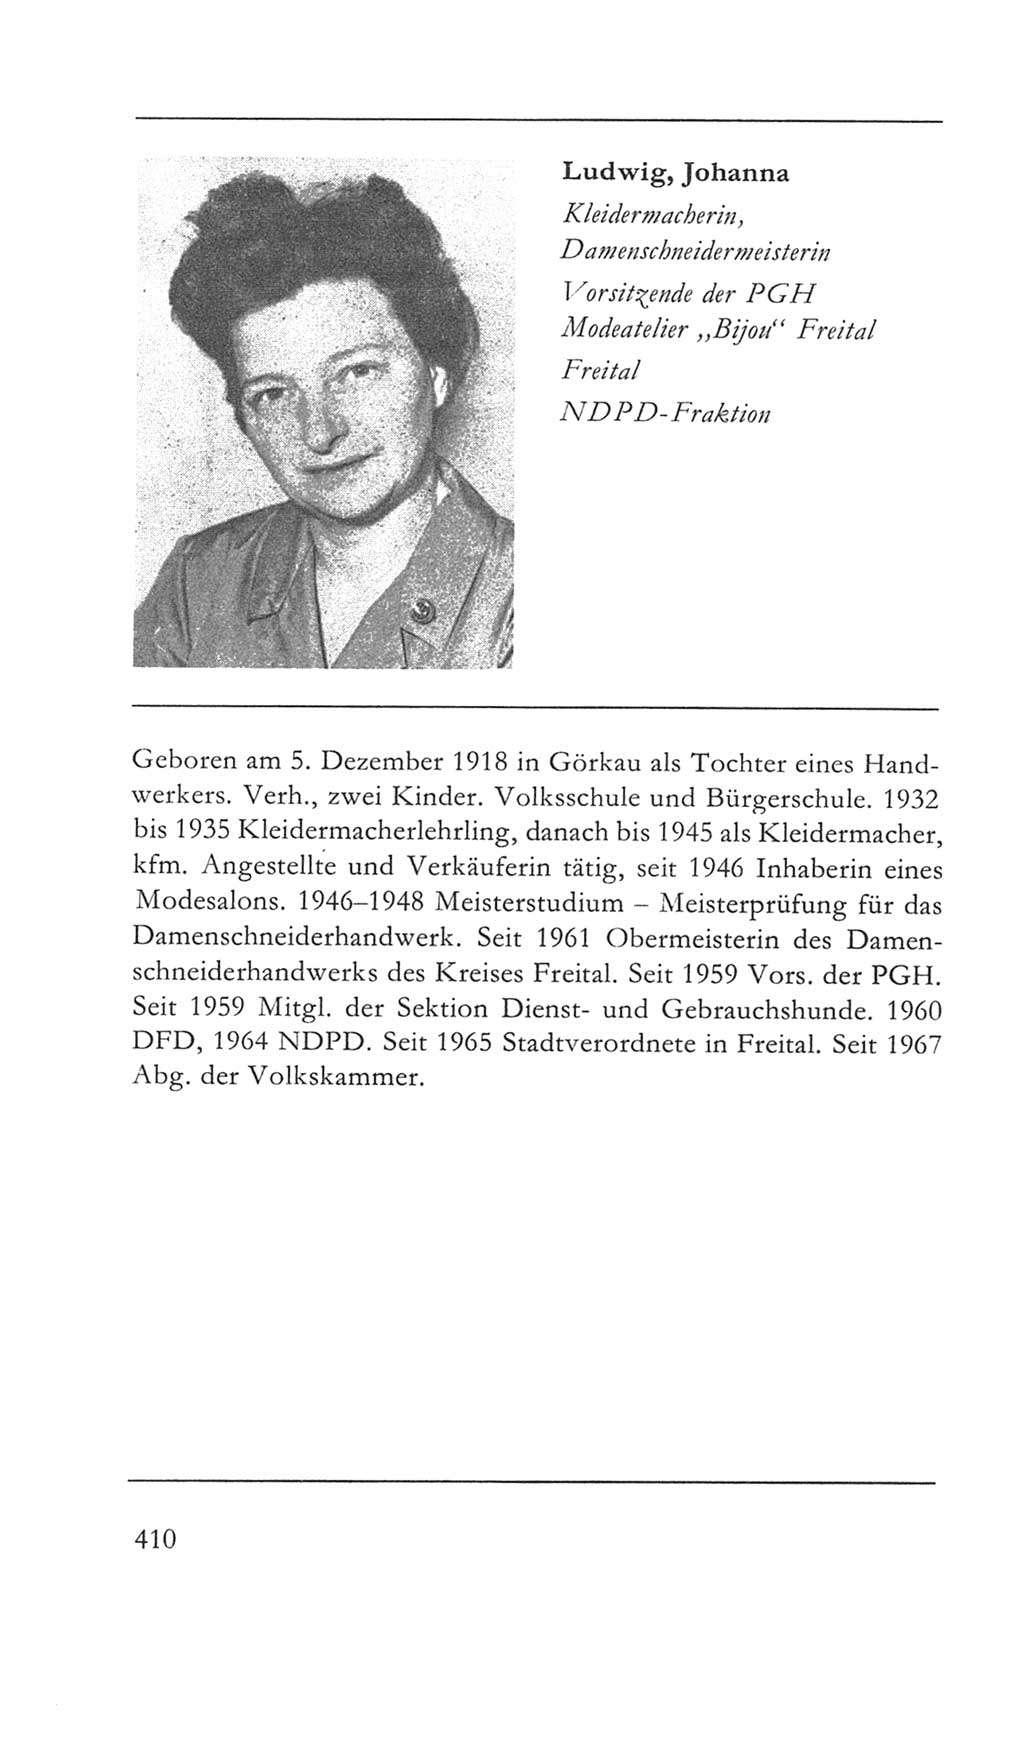 Volkskammer (VK) der Deutschen Demokratischen Republik (DDR) 5. Wahlperiode 1967-1971, Seite 410 (VK. DDR 5. WP. 1967-1971, S. 410)